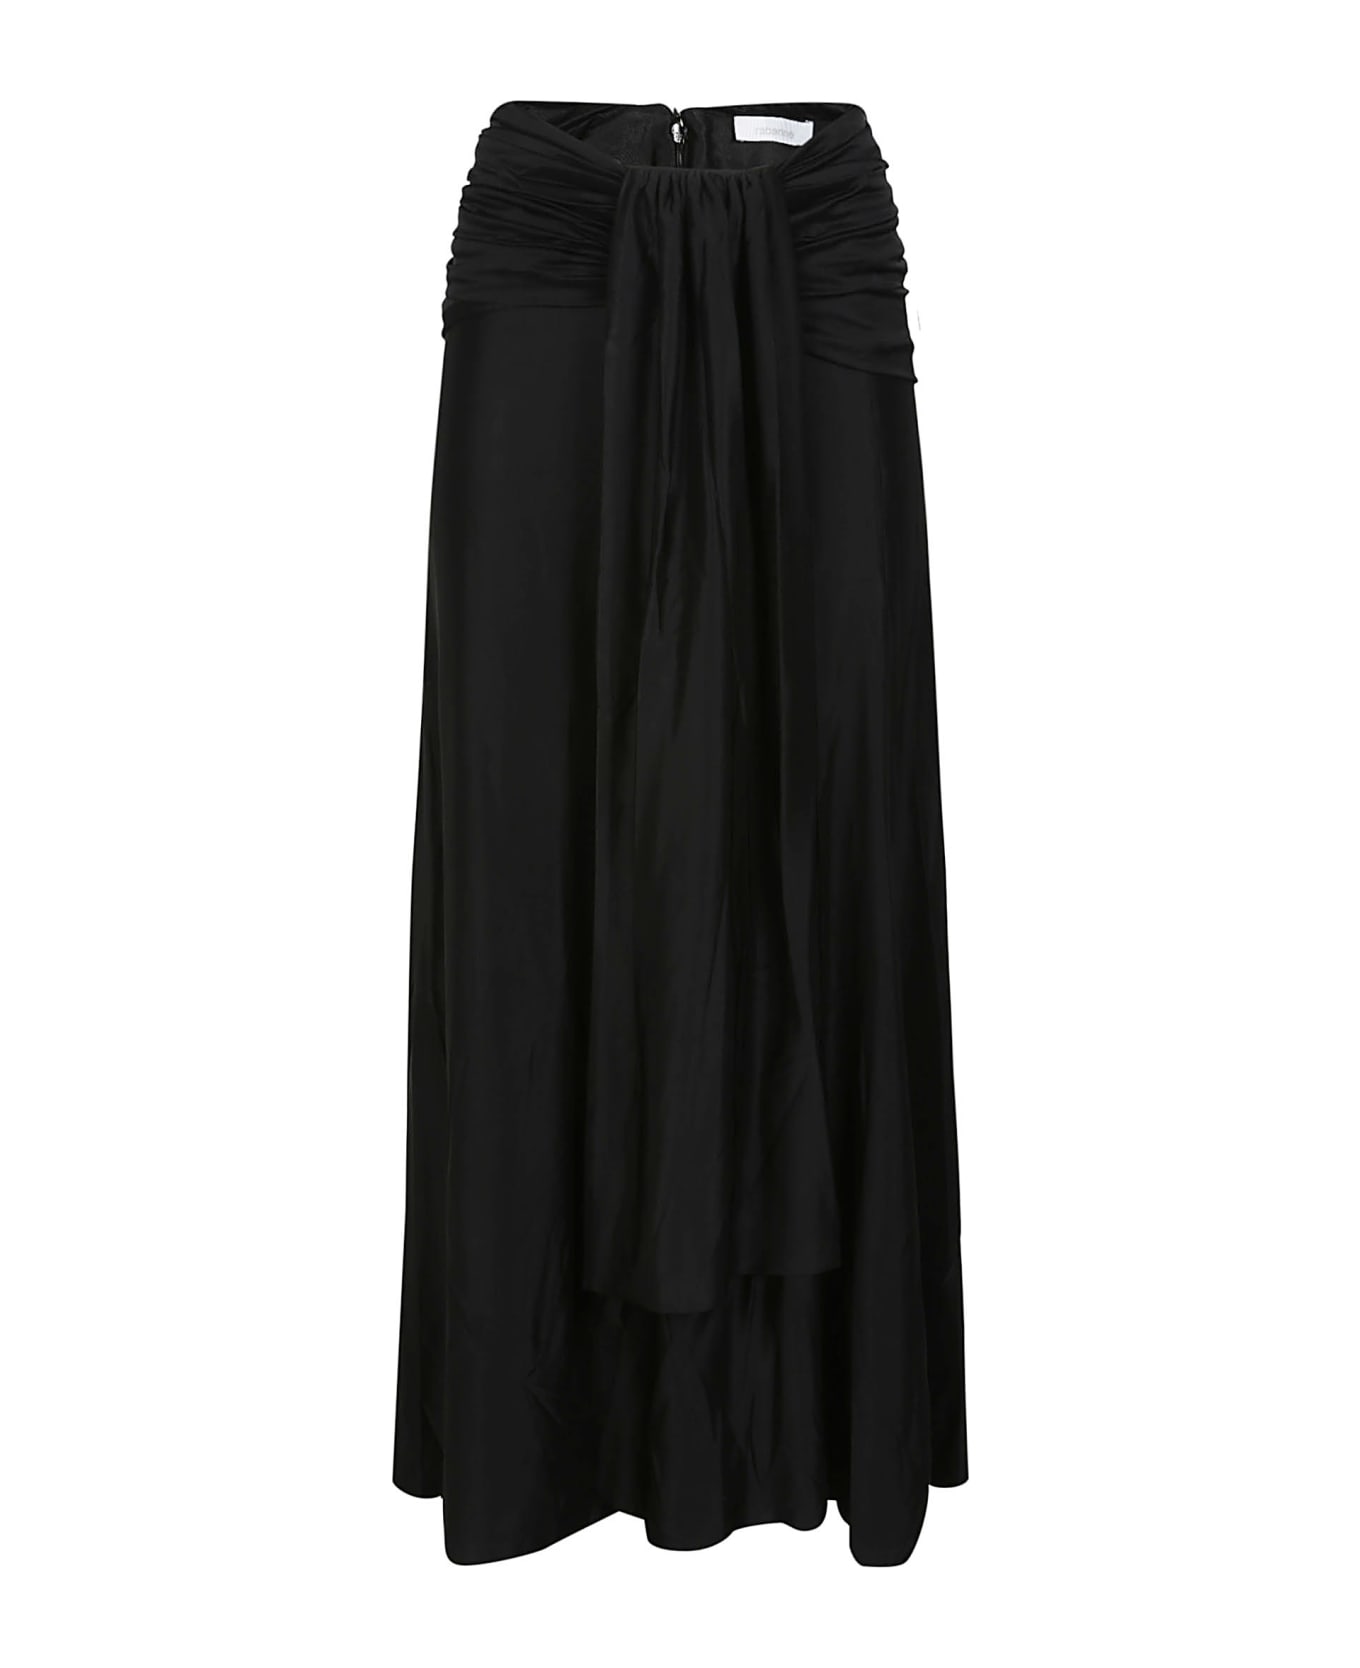 Paco Rabanne Long Skirt - Black